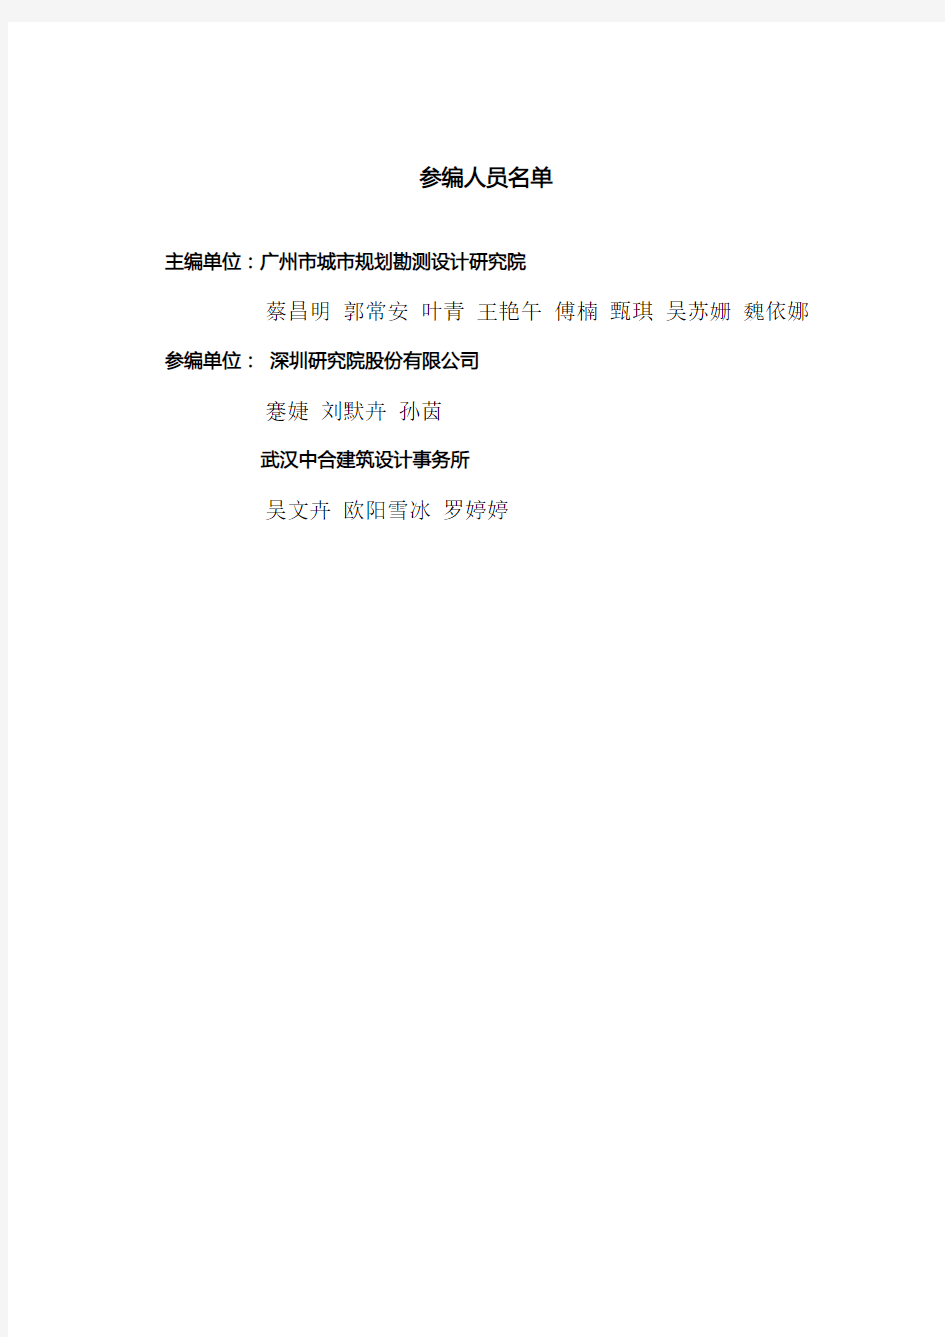 广州教育城一期建设项目LID设施设计指引手册